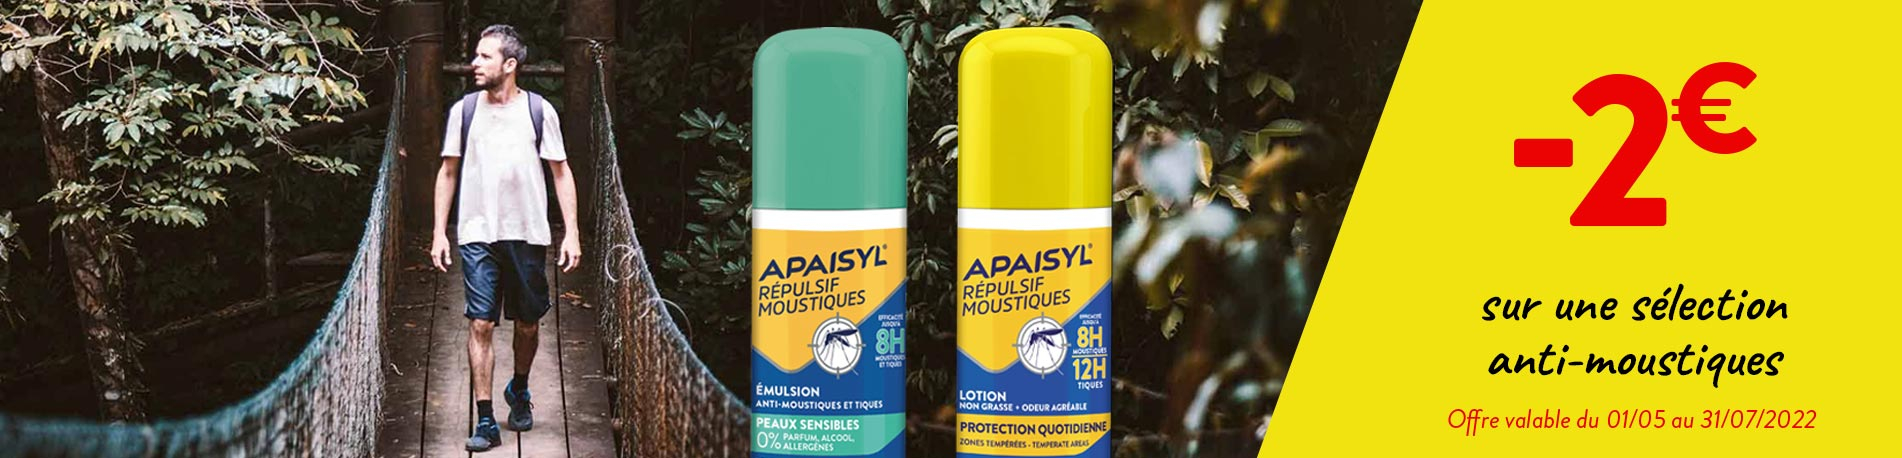 Spray Apaisyl® Répulsif Moustiques Peaux sensibles